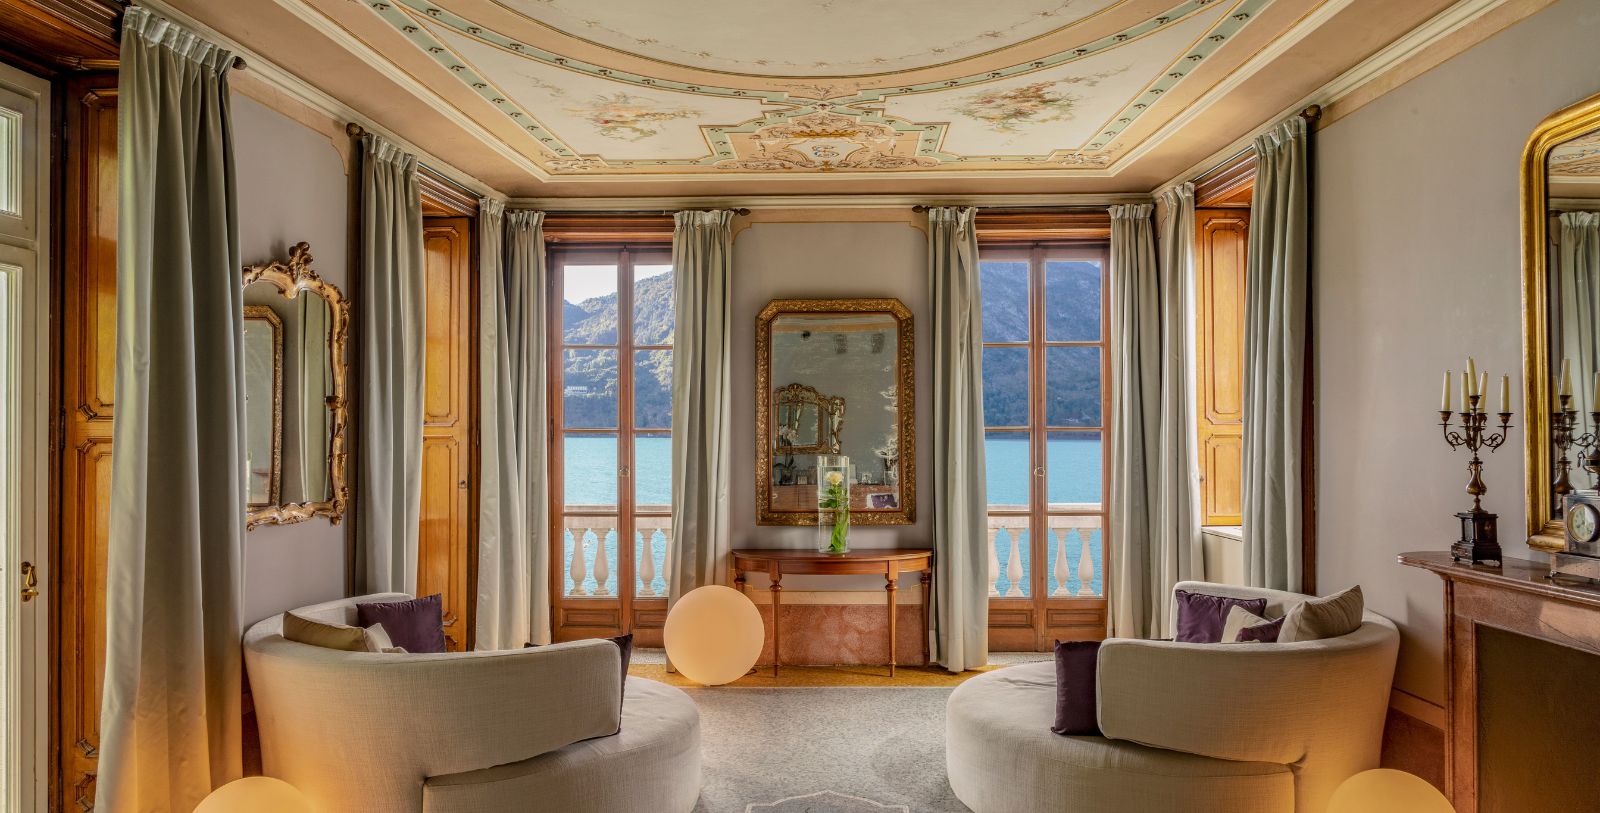 Image of Spa Treatment Room, Grand Hotel Tremezzo, Tremezzina, Italy, Spa